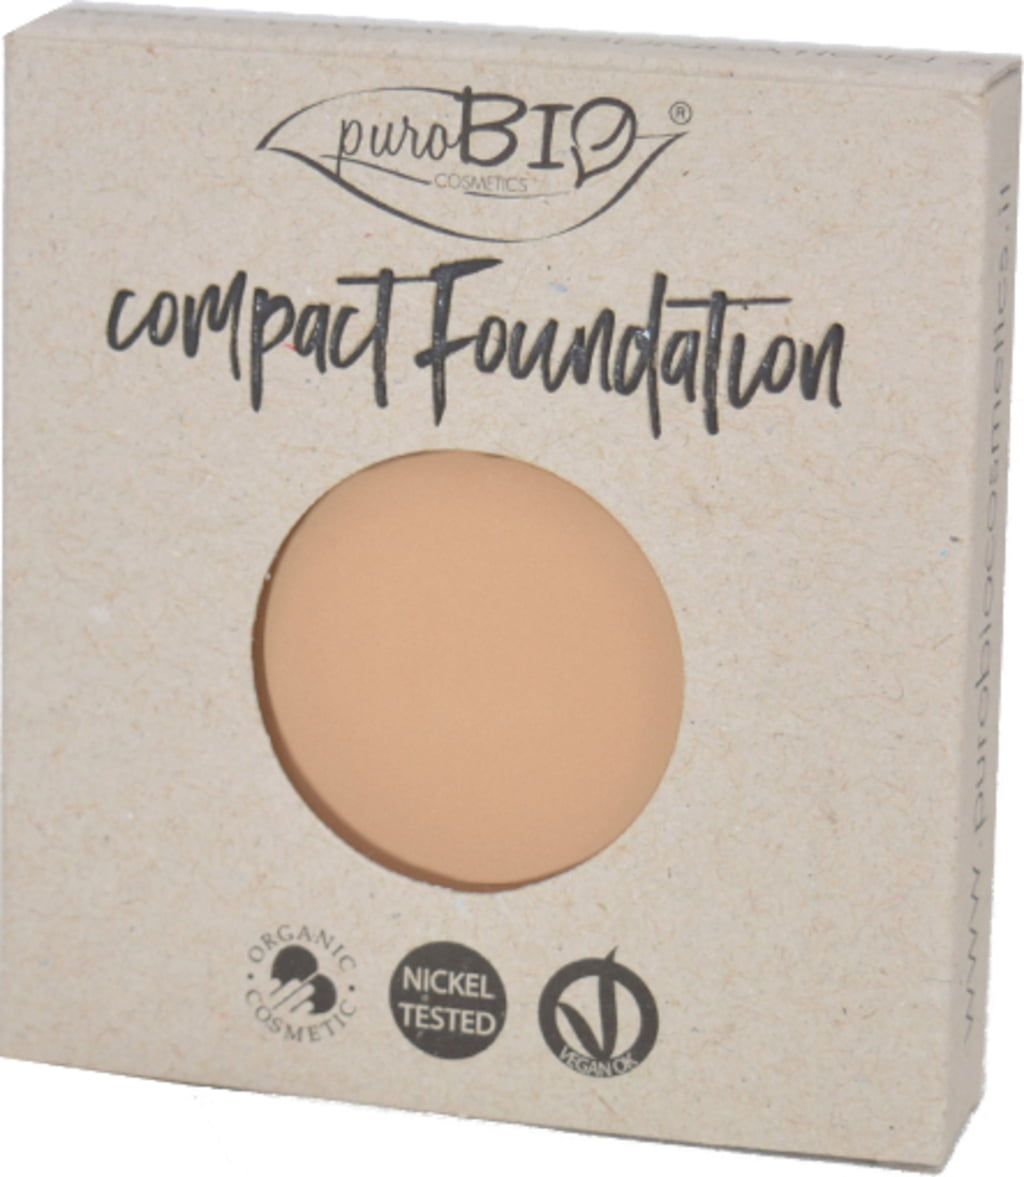 puroBIO cosmetics Compact Foundation REFILL - 03